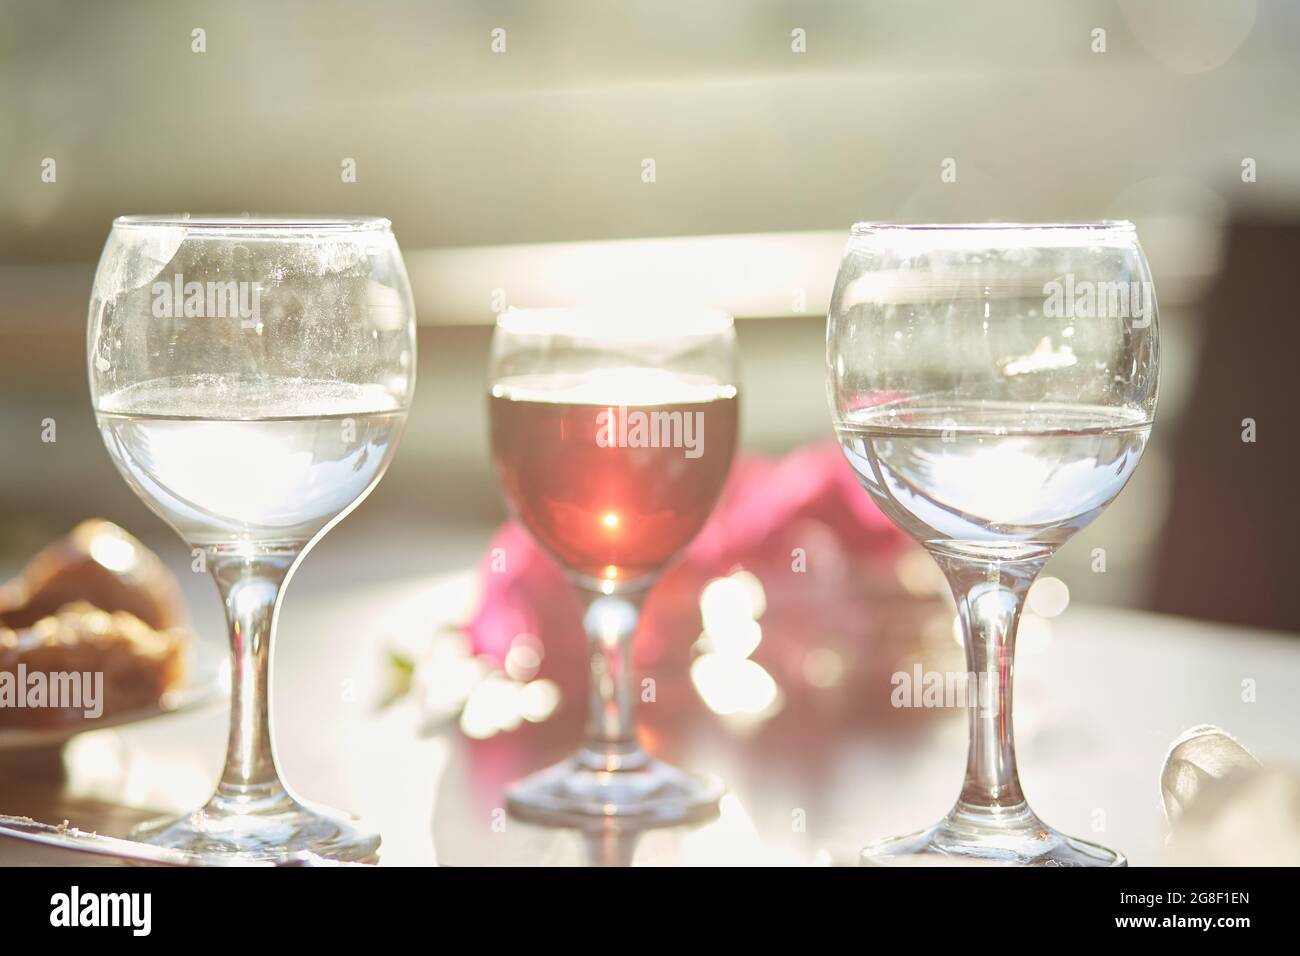 Ein Glas Rotwein und ein Glas Wasser auf dem Tisch. Dekorationen von rosa Bougainvillea Blumen. Speicherplatz kopieren. Stockfoto